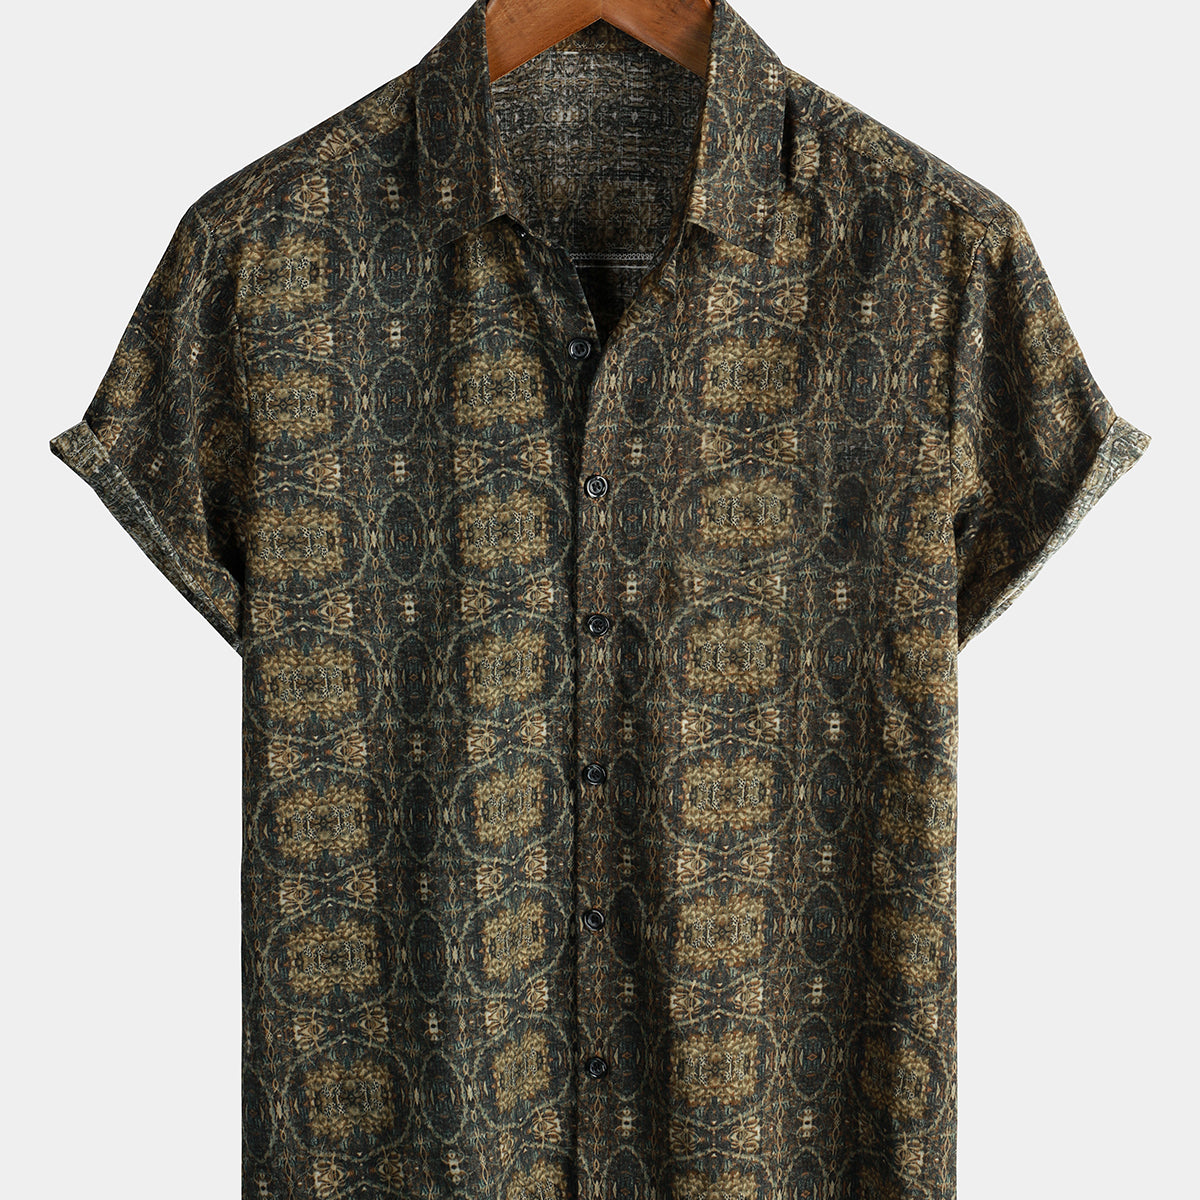 Camisa con botones de verano retro de manga corta vintage de algodón para hombre